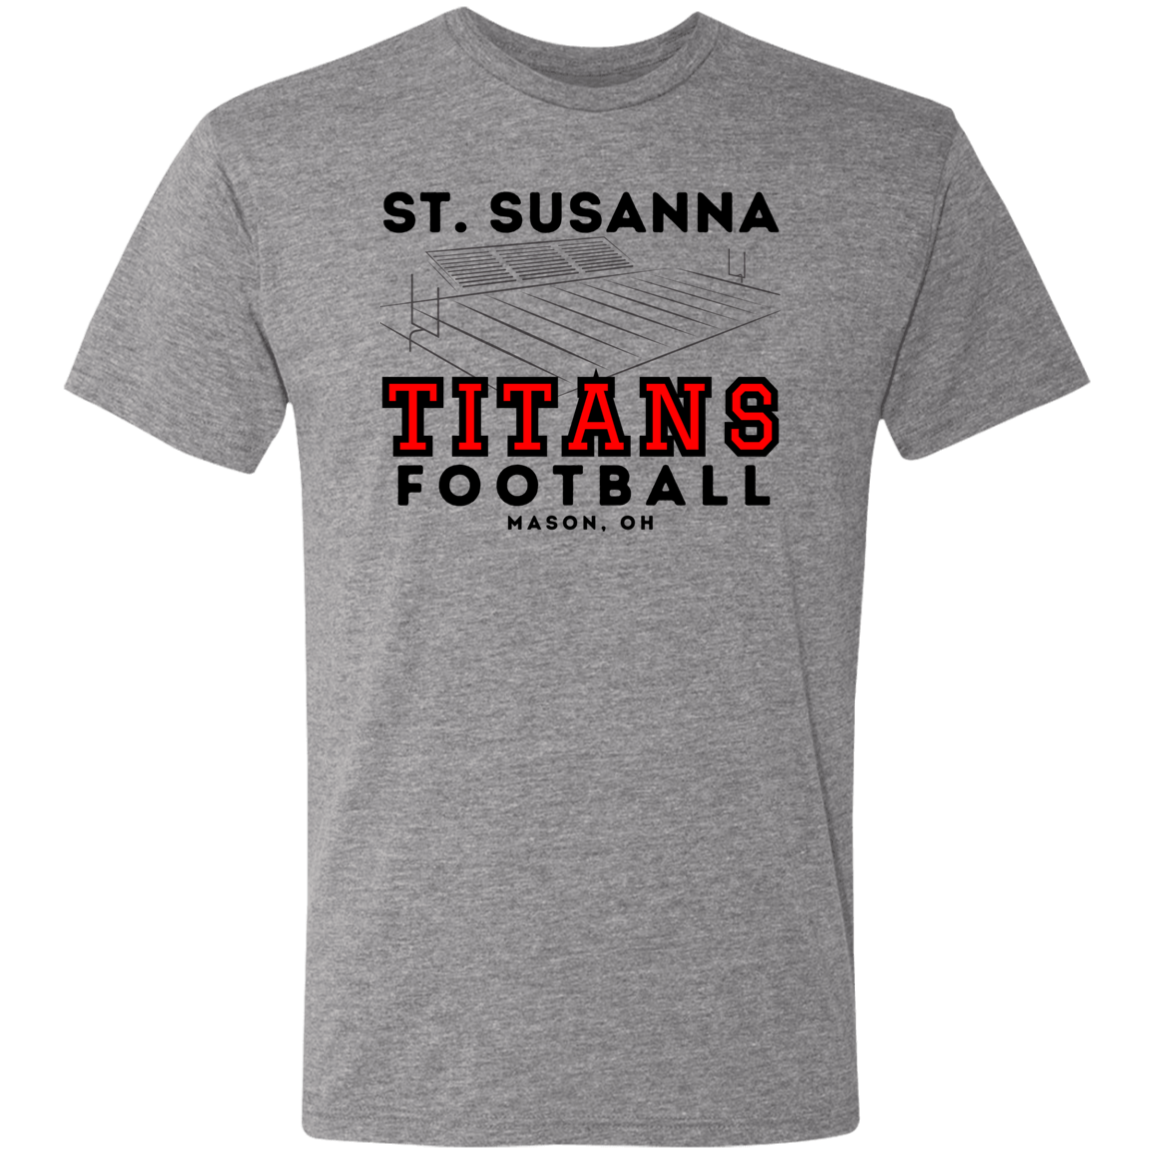 St. Susanna Titans Football FieldMen's Triblend T-Shirt